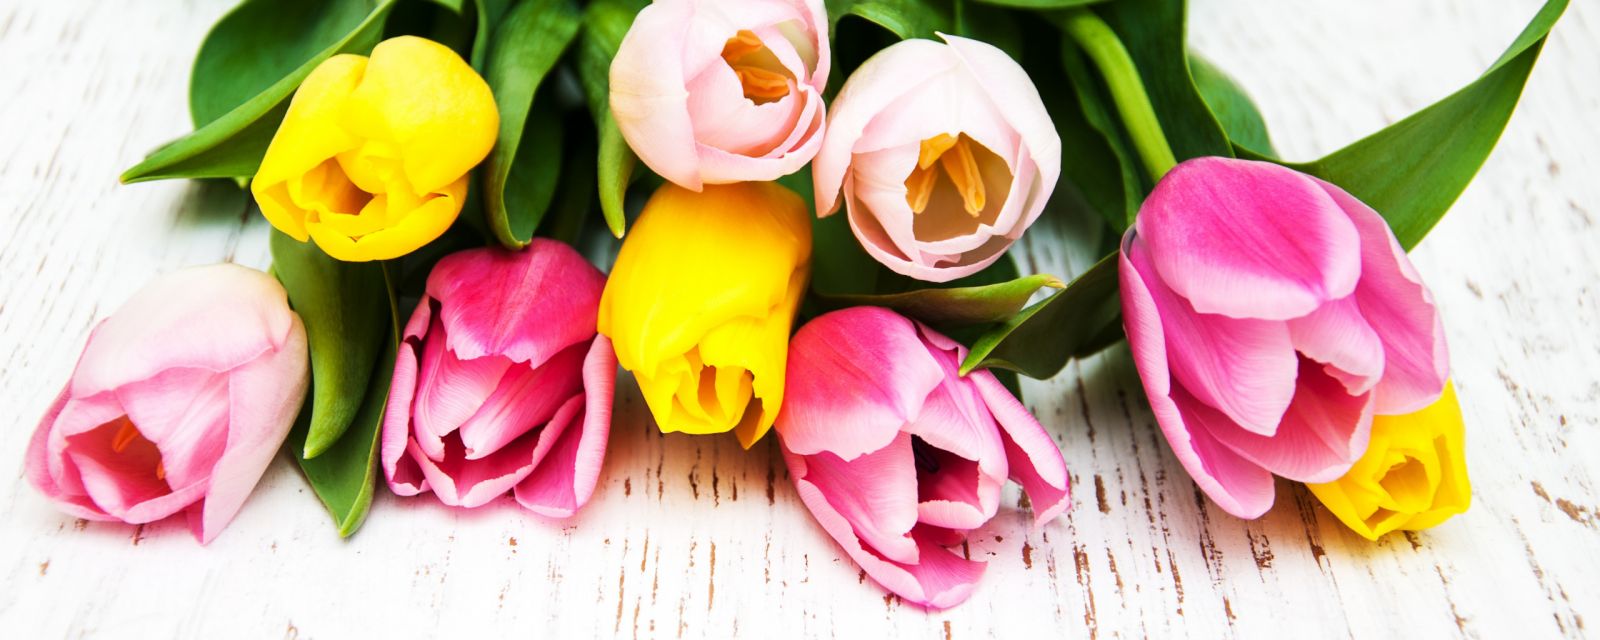 прекрасный букет тюльпанов к 8 марта